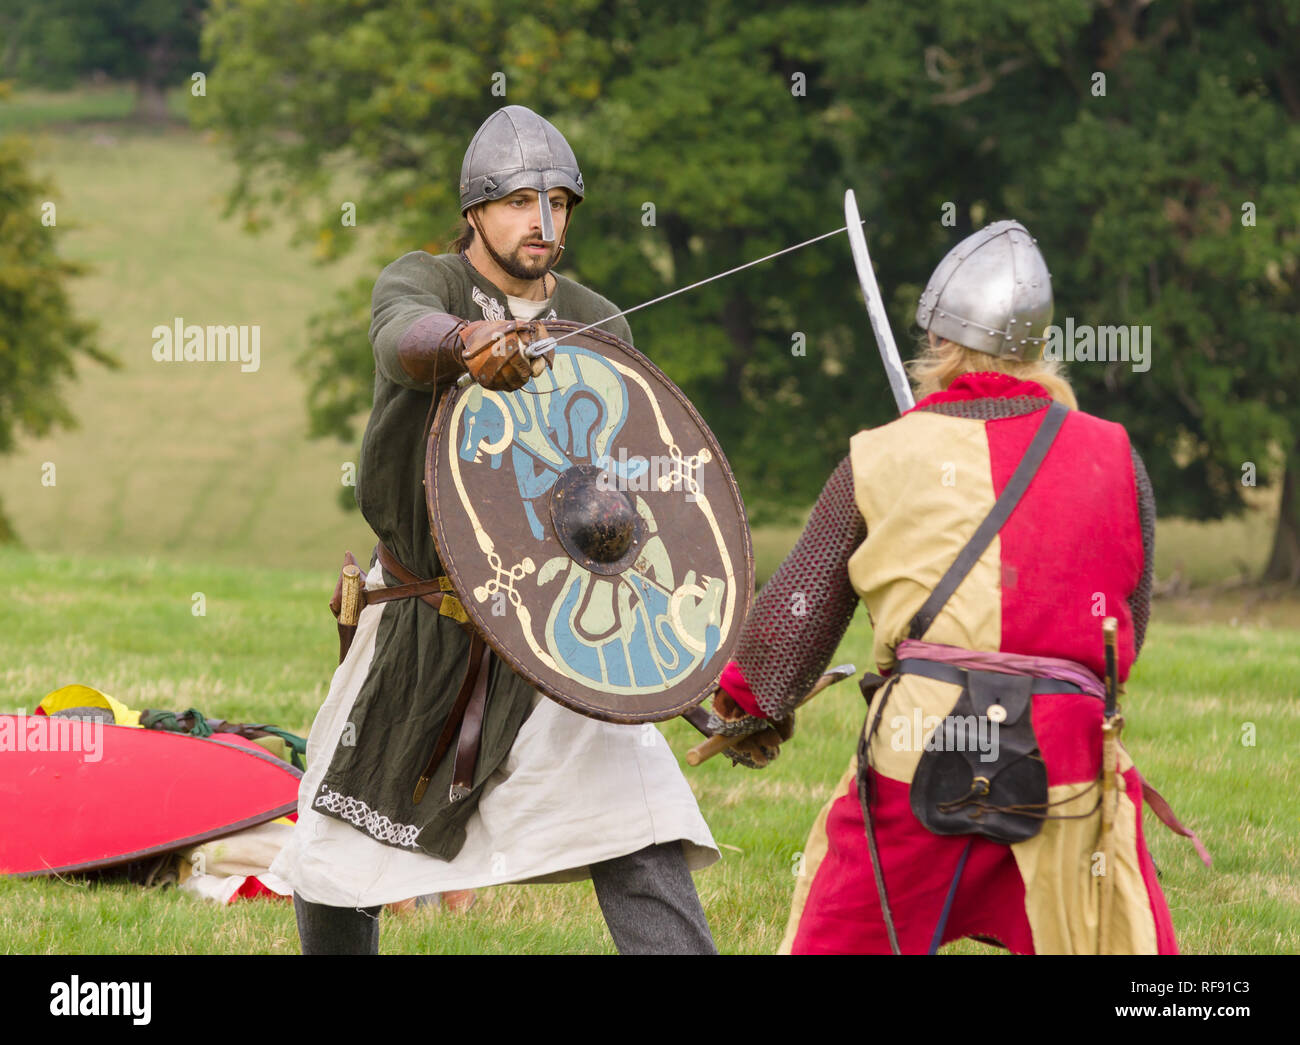 Mittelalterliche Re-enactors in Rüstung und Kostüme des 12. Jahrhunderts mit Waffen ausgestattet gekleidet nachgespielt Bekämpfung des Zeitraums Stockfoto